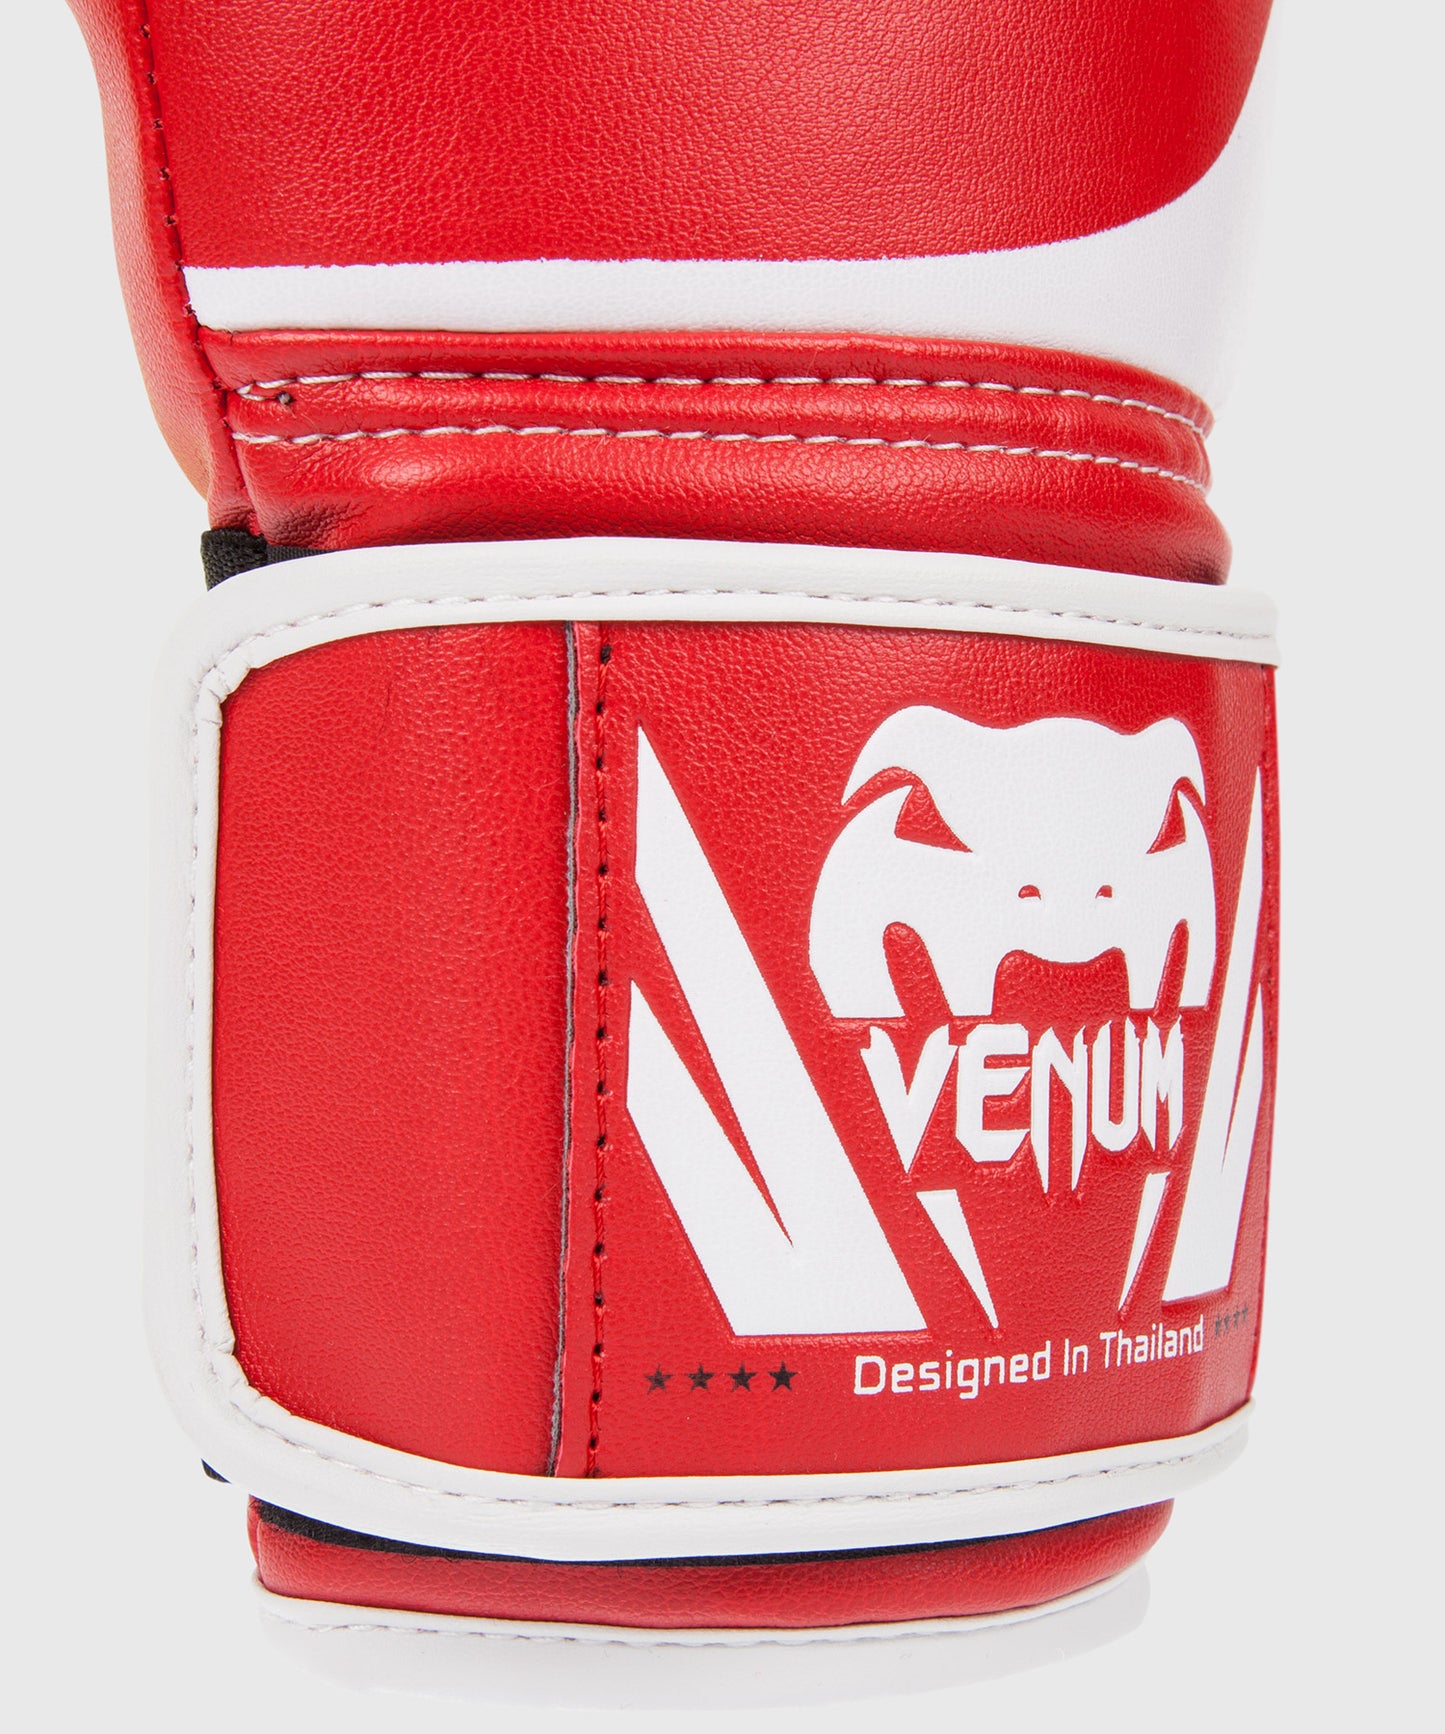 Боксерские перчатки Venum Challenger 2.0 - красные